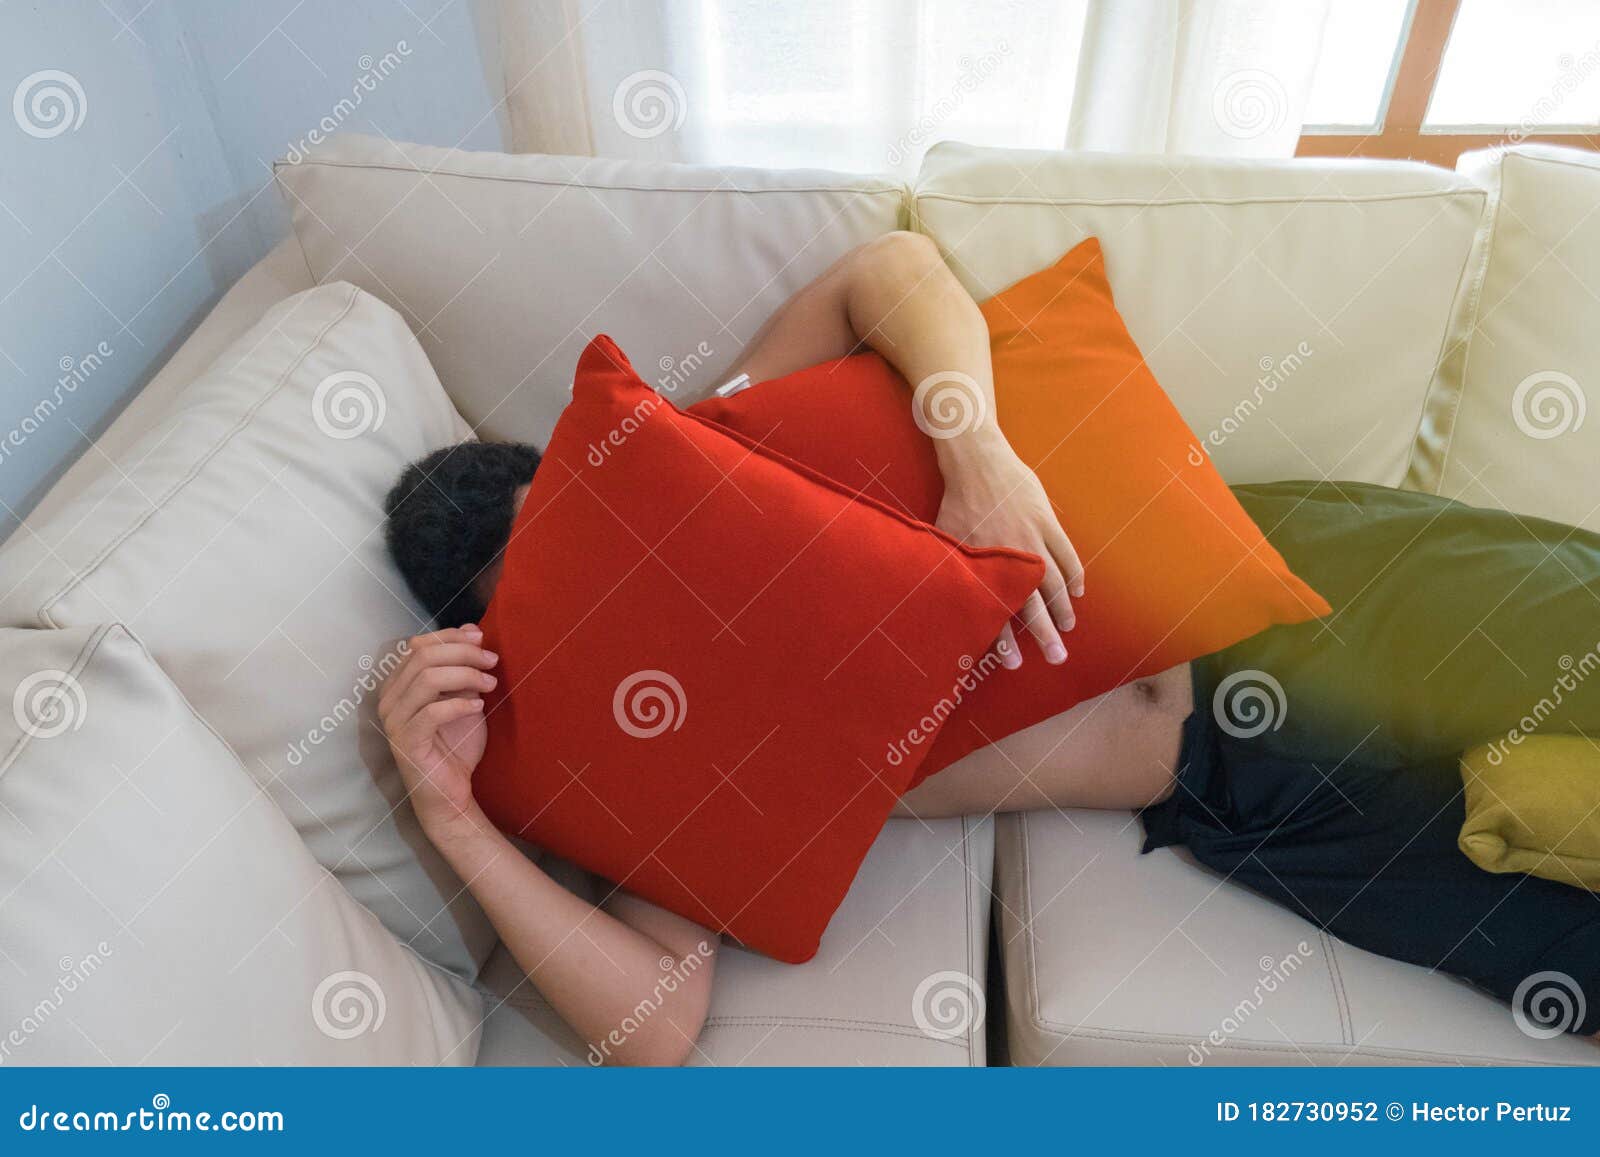 young-man-hiding-under-pillows-sofa-182730952.jpg